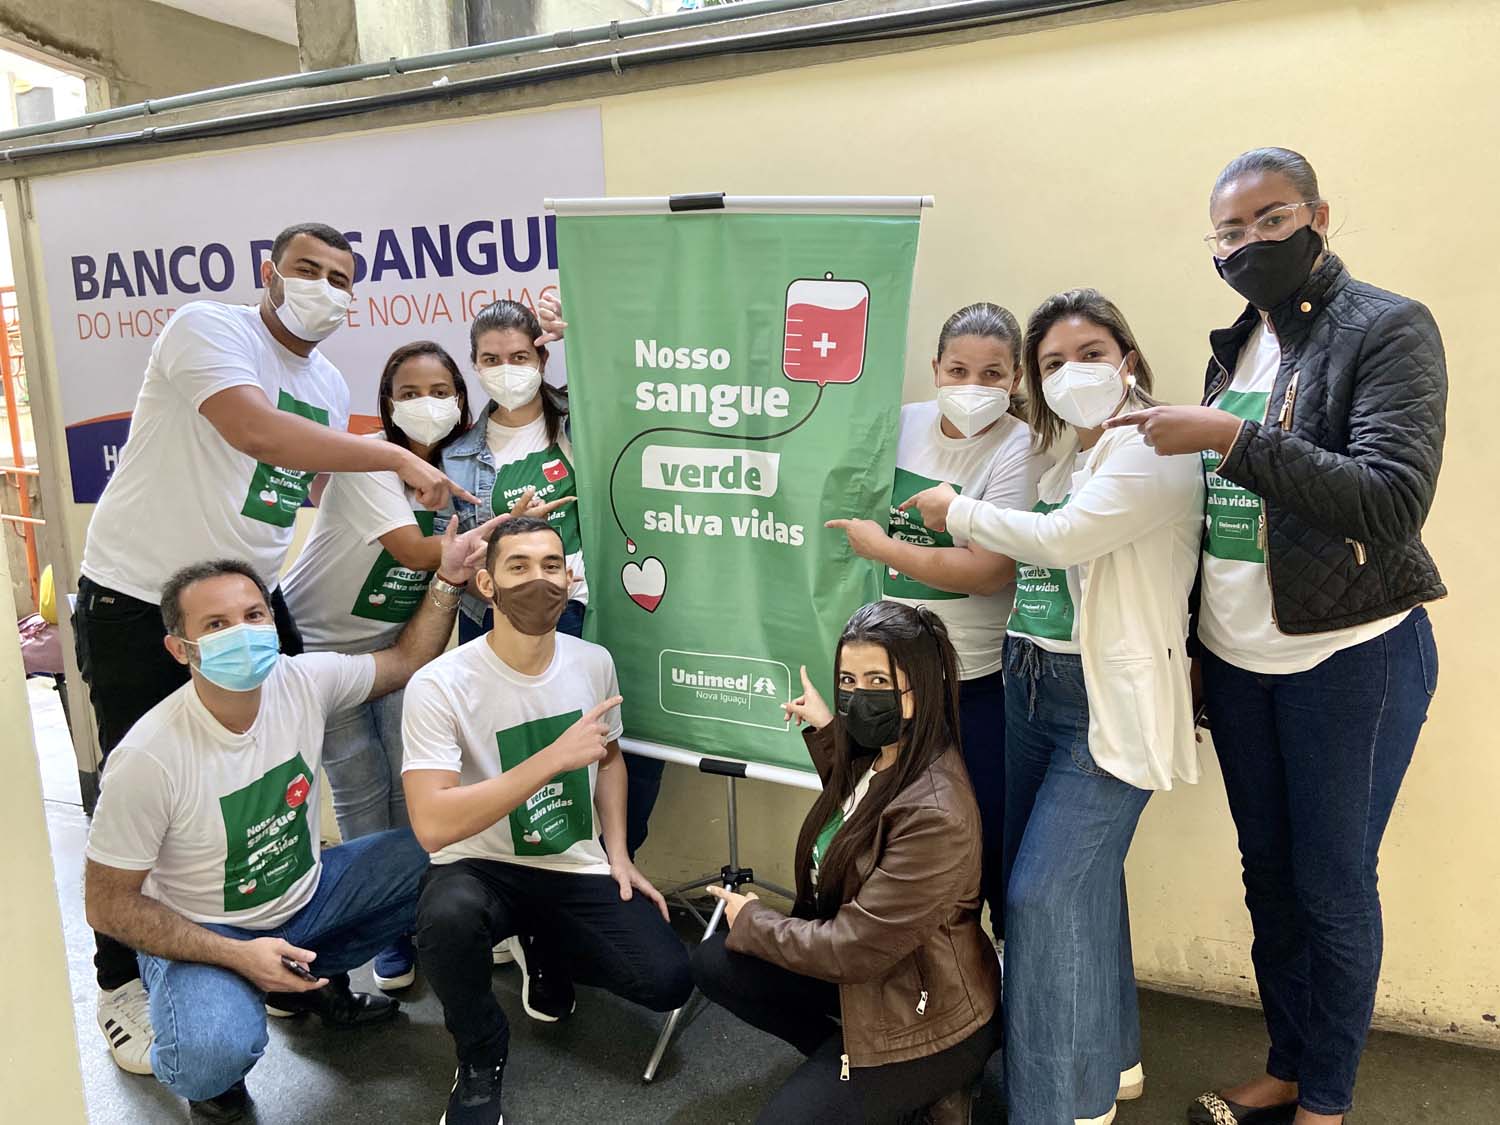 Unimed Nova Iguaçu lança campanha “Nosso sangue verde salva vidas”